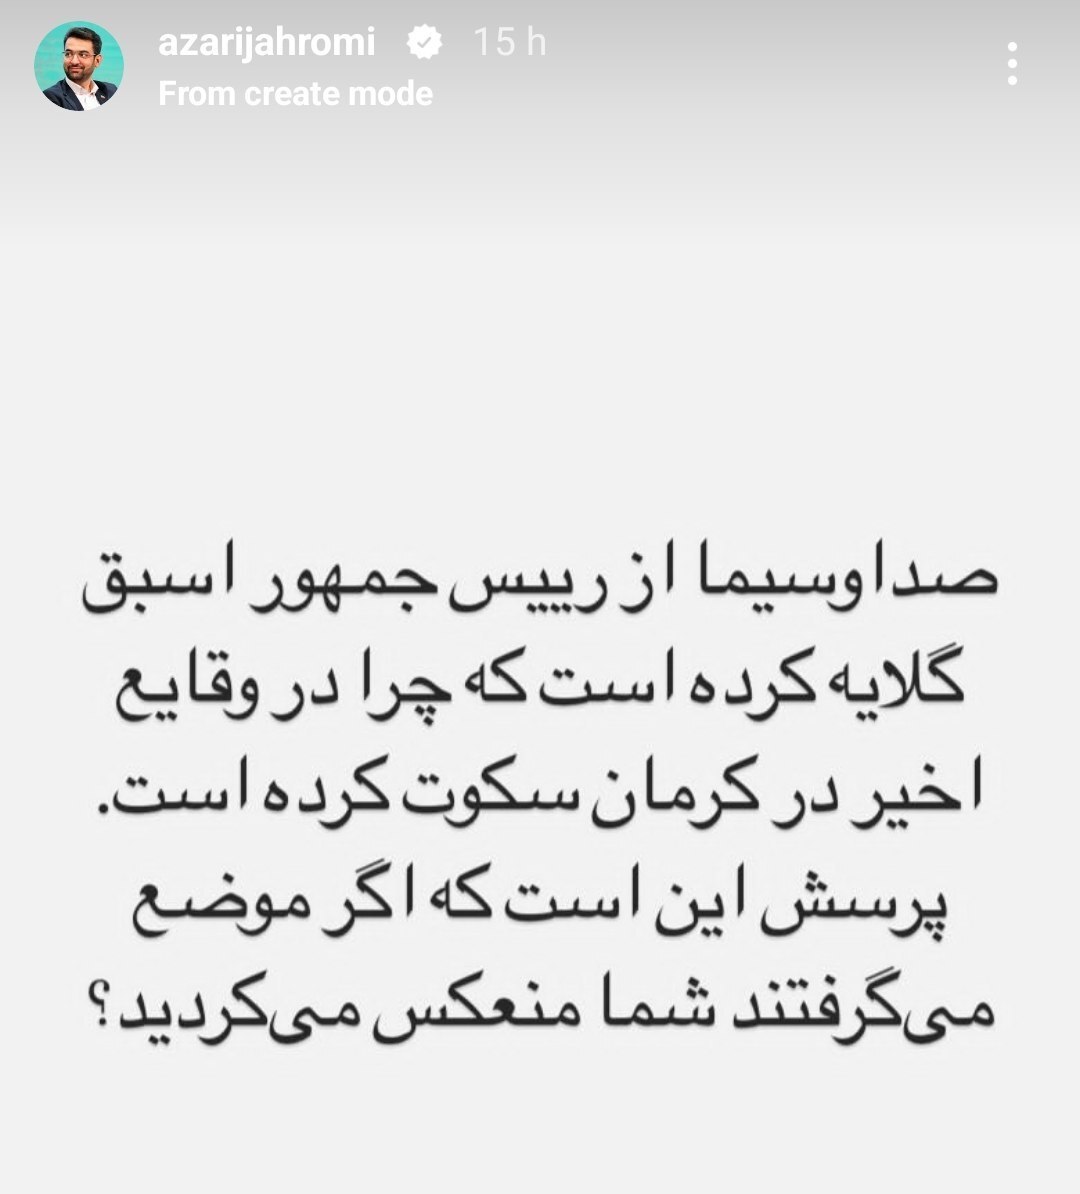 متلک خواندنی وزیر روحانی به تلویزیون + عکس